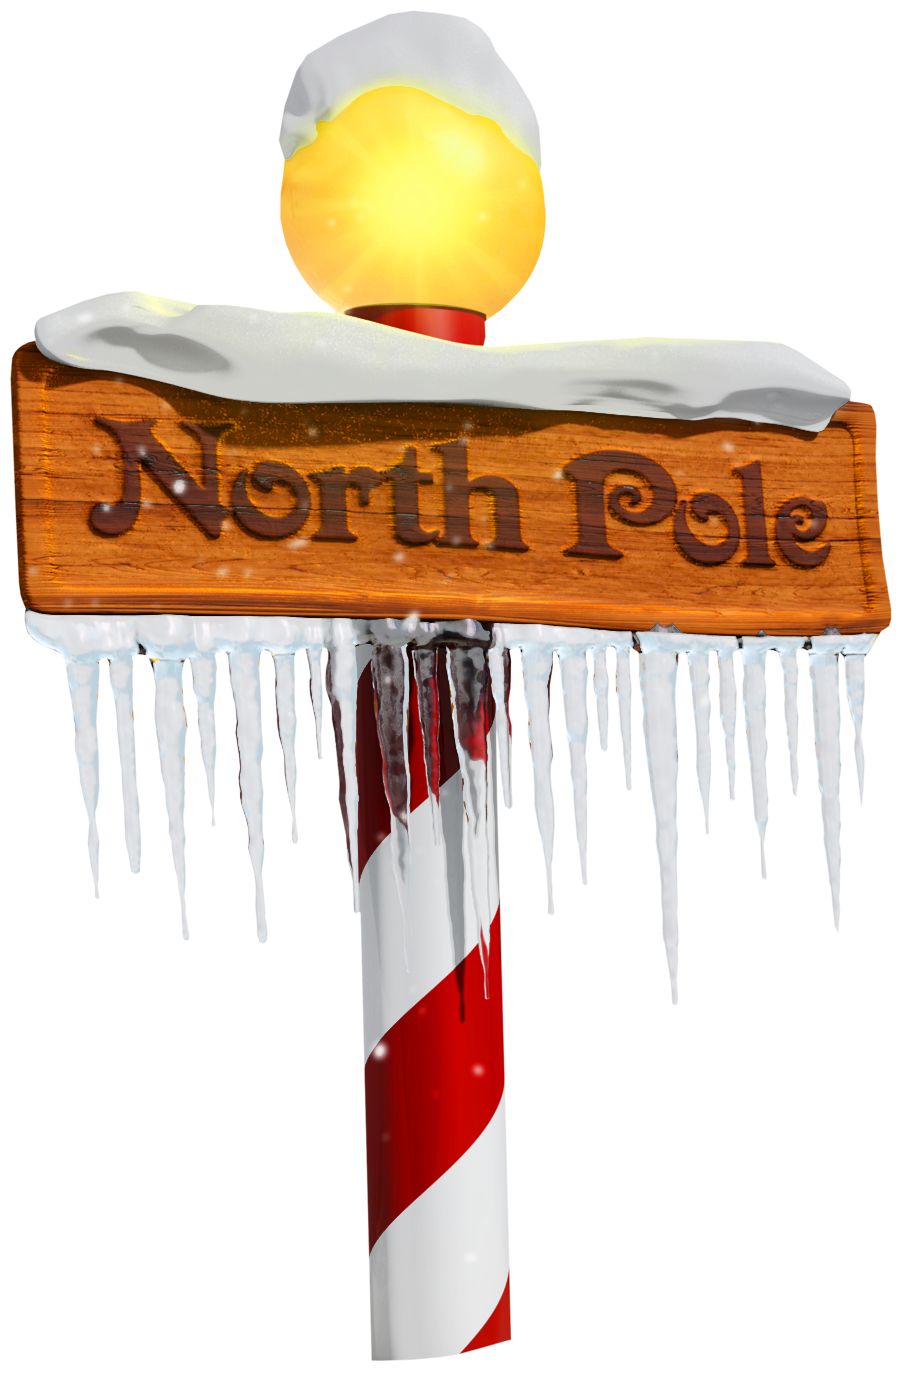 North Pole Sign Clip art